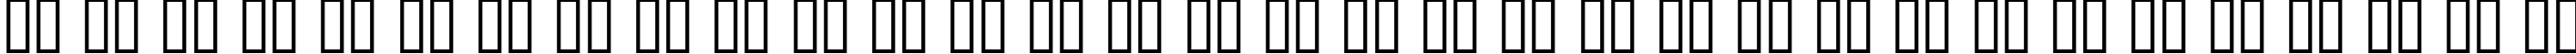 Пример написания русского алфавита шрифтом Futurex Narrow